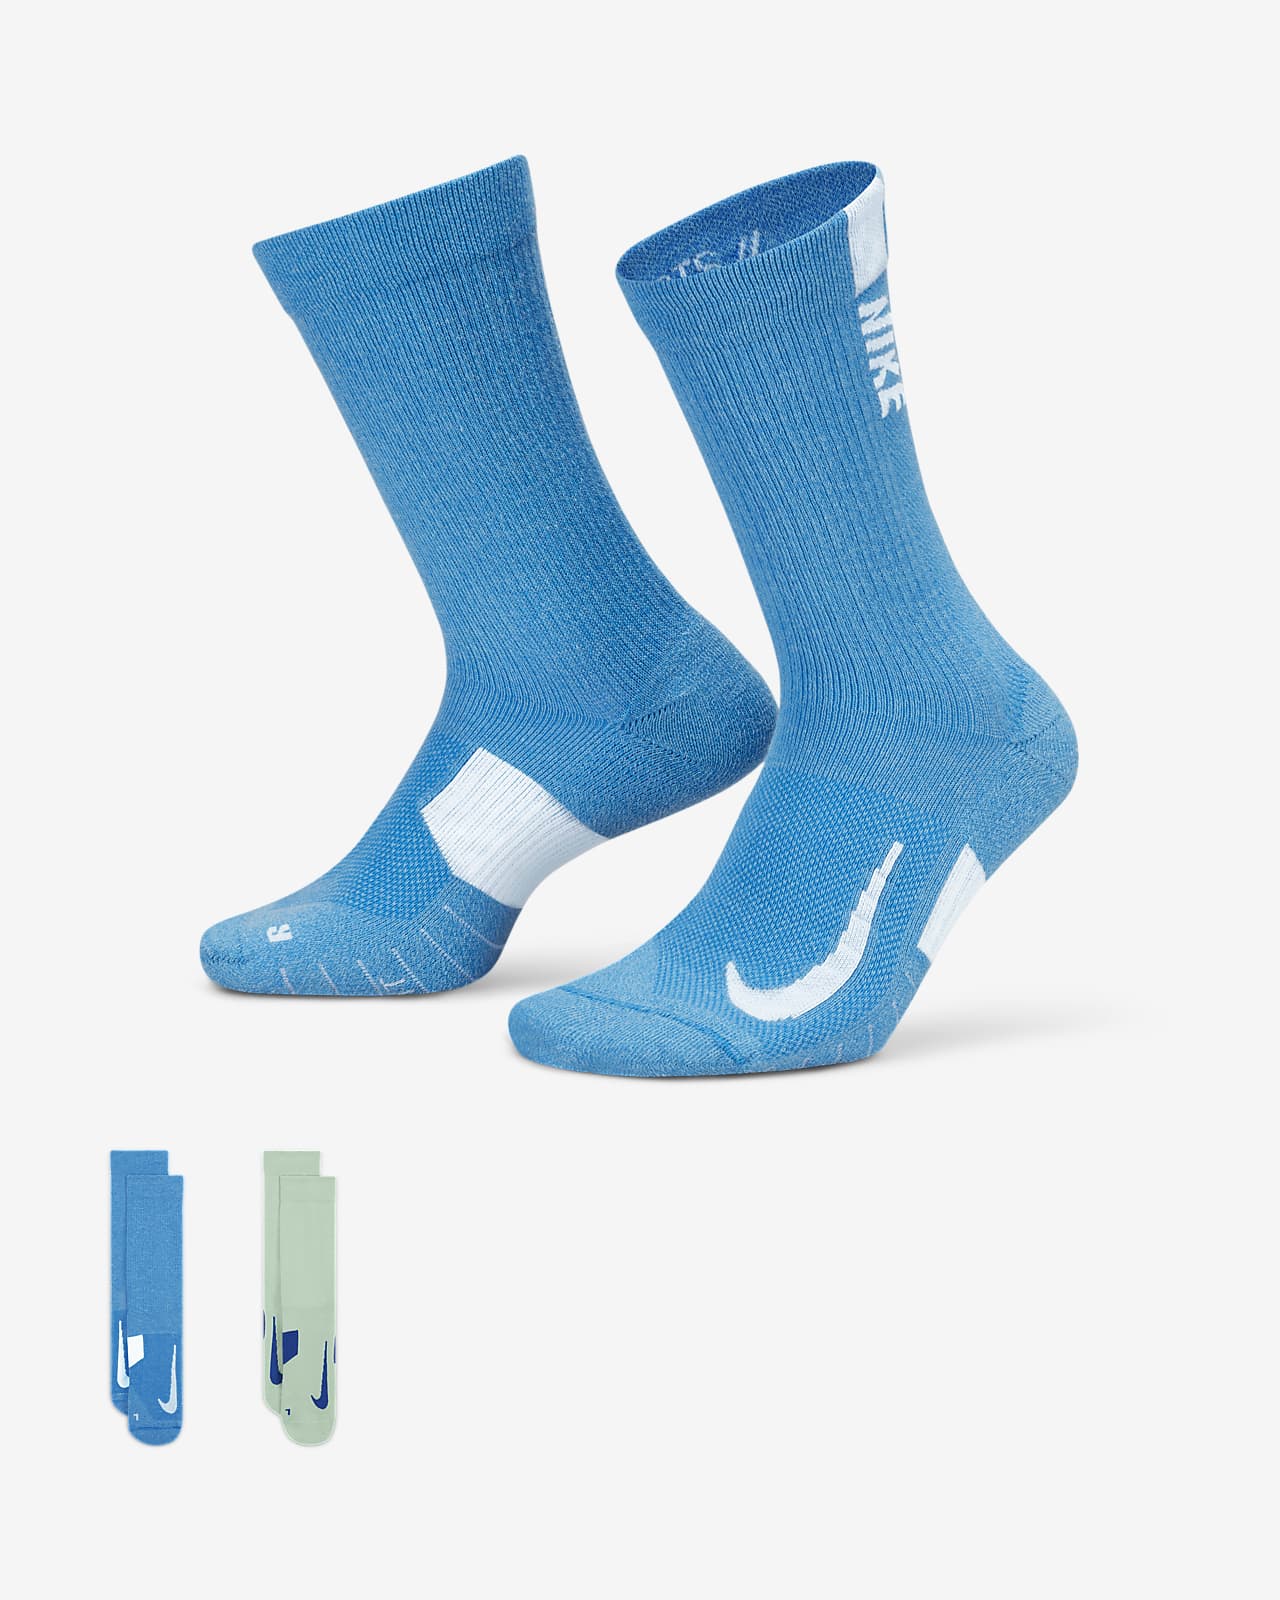 Chaussettes mi-mollet Nike Multiplier (2 paires)